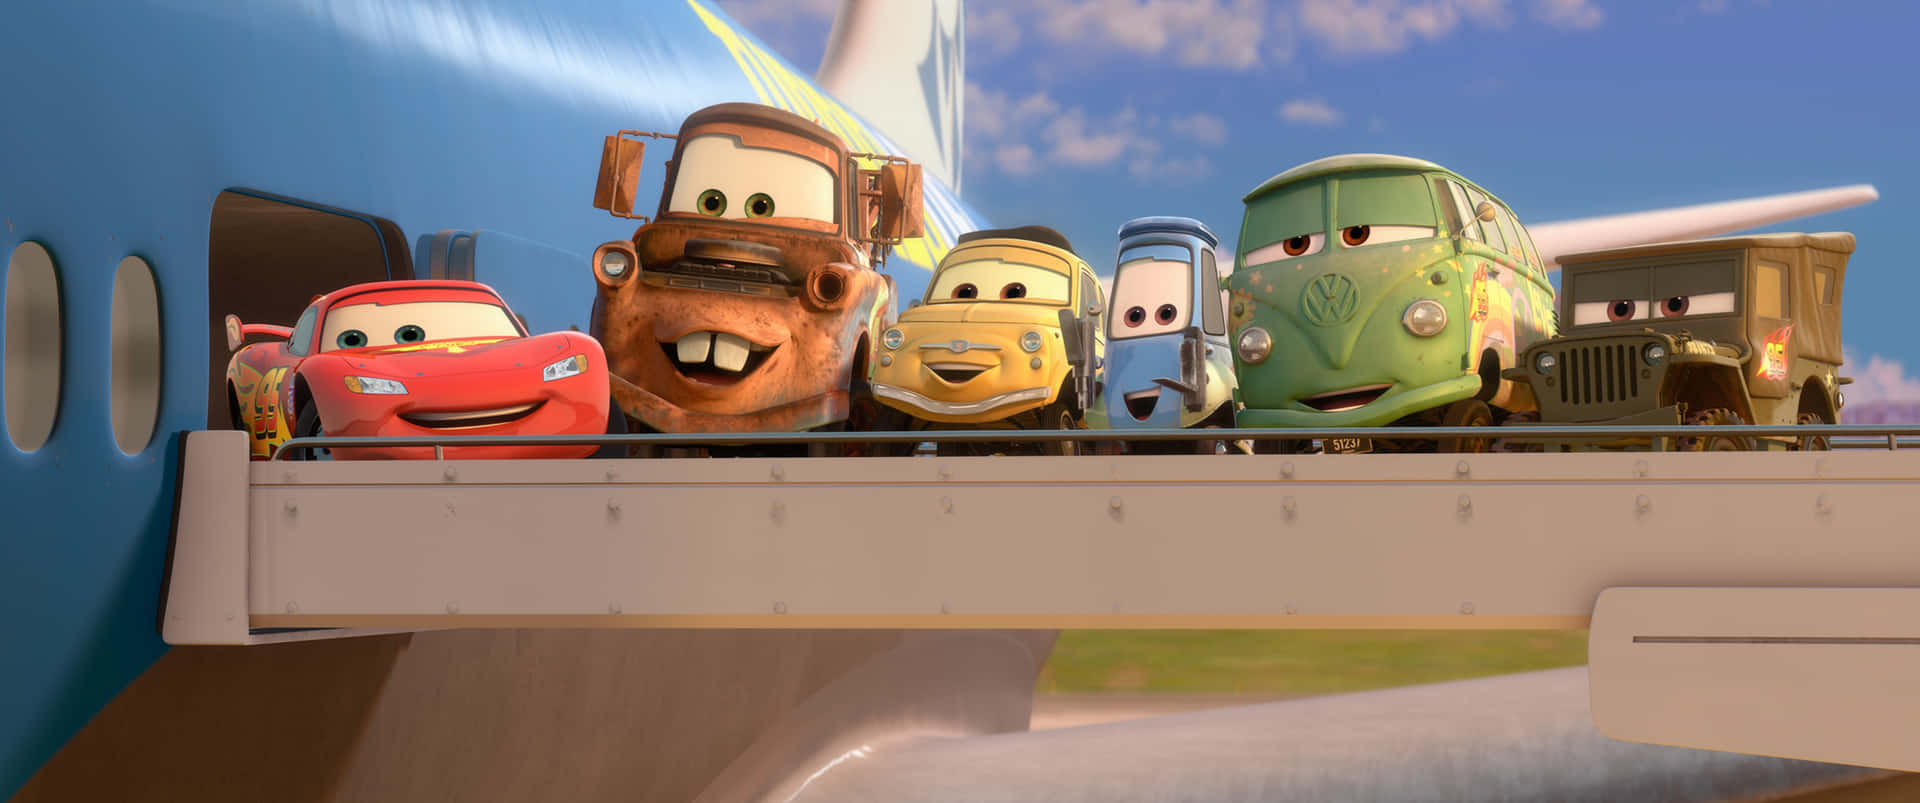 Lightningmcqueen Og Mater Fra Disney-pixars Cars 2.